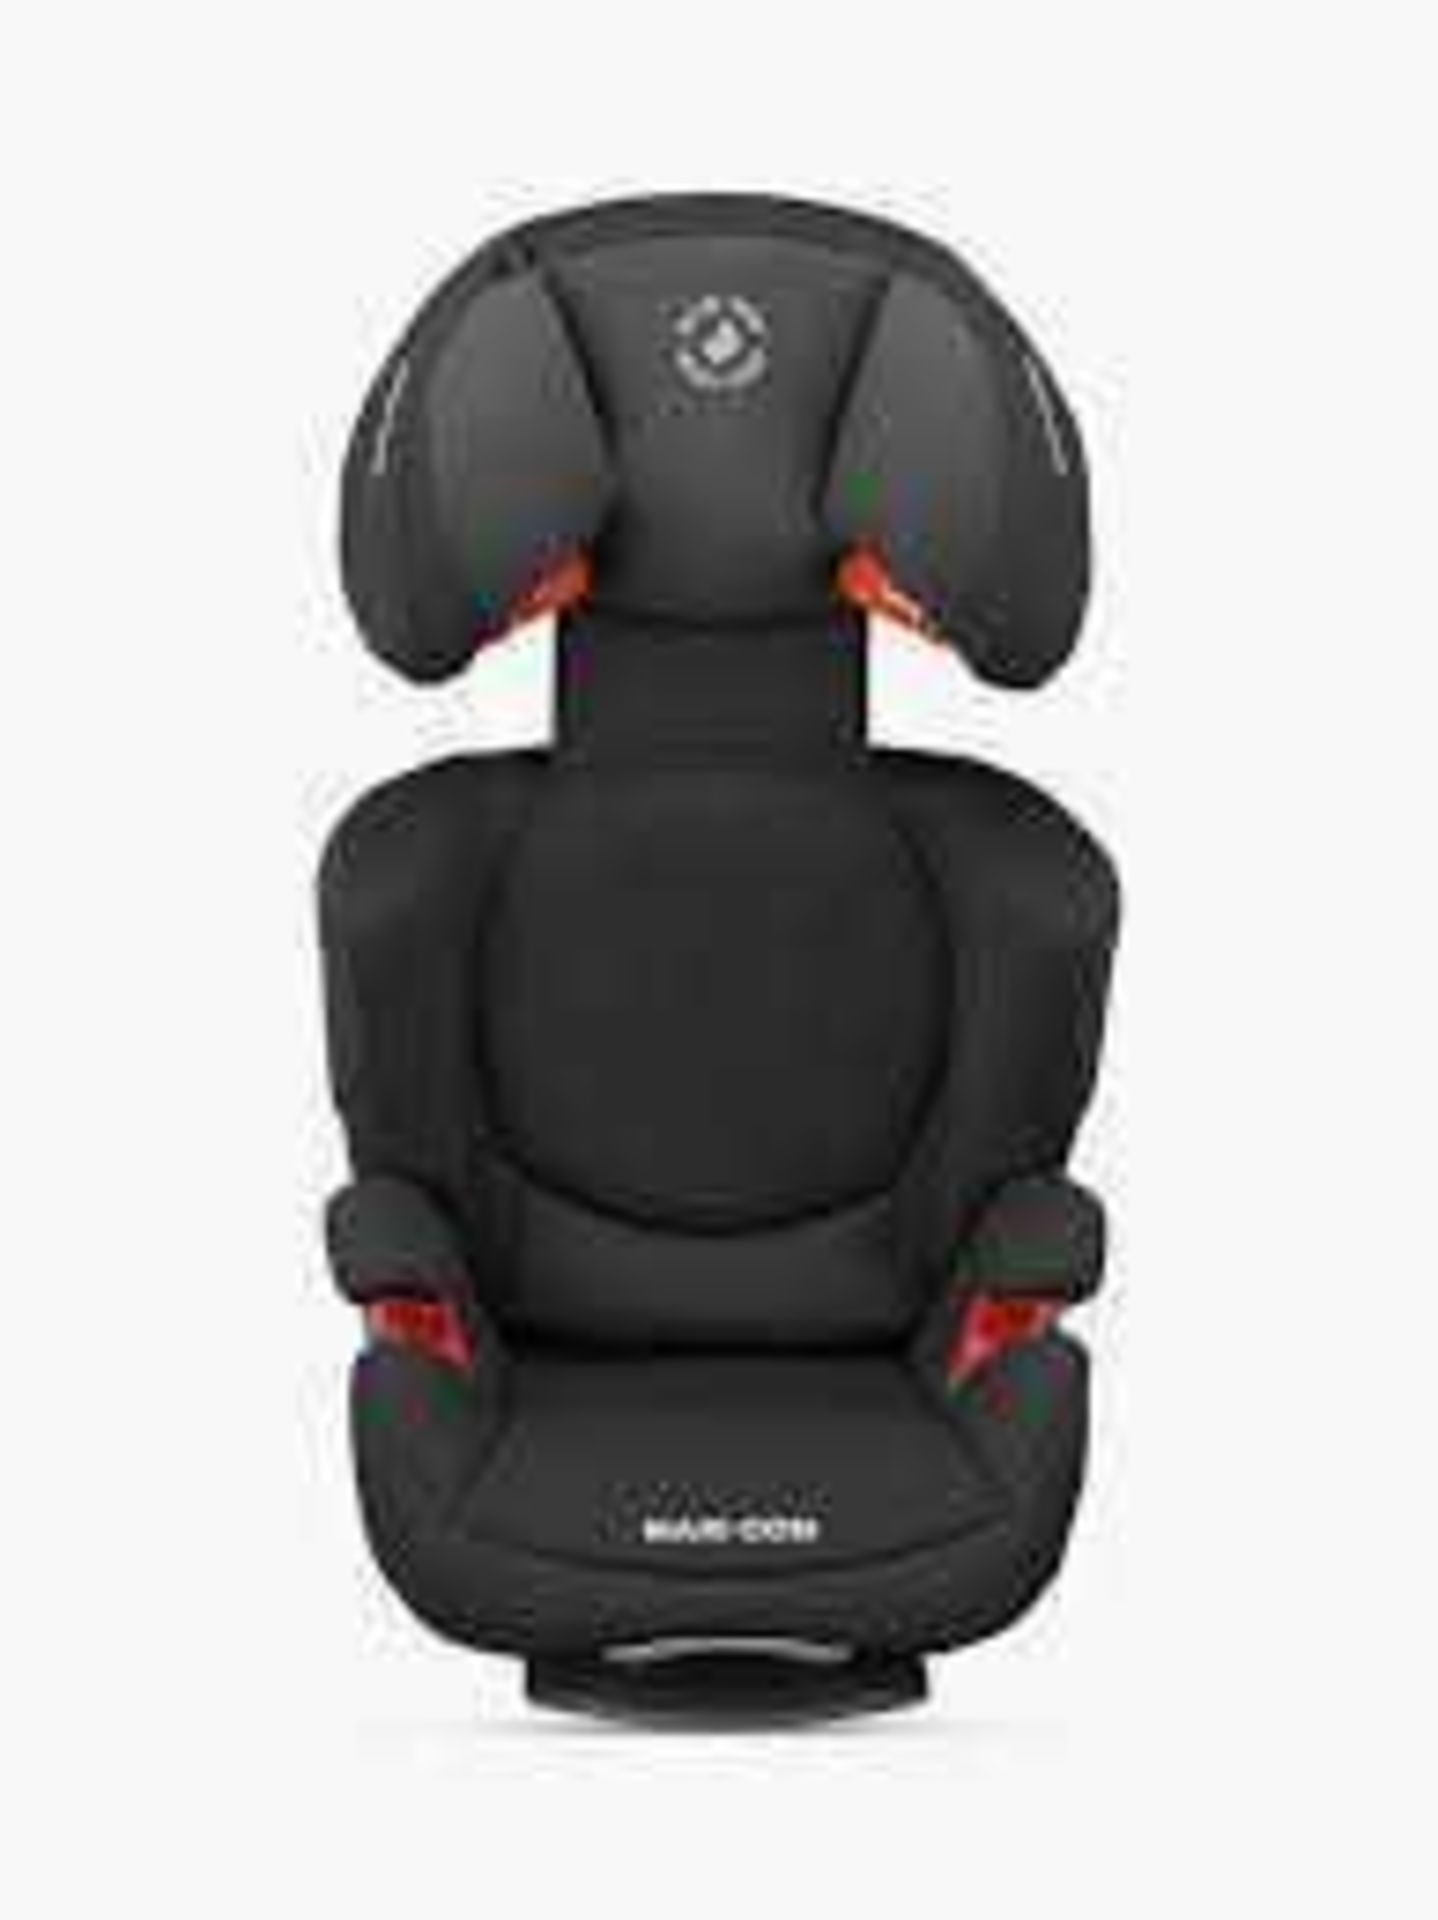 RRP £160 Boxed Maxi-Cosi Rodi Air Protect Car Safety Seats